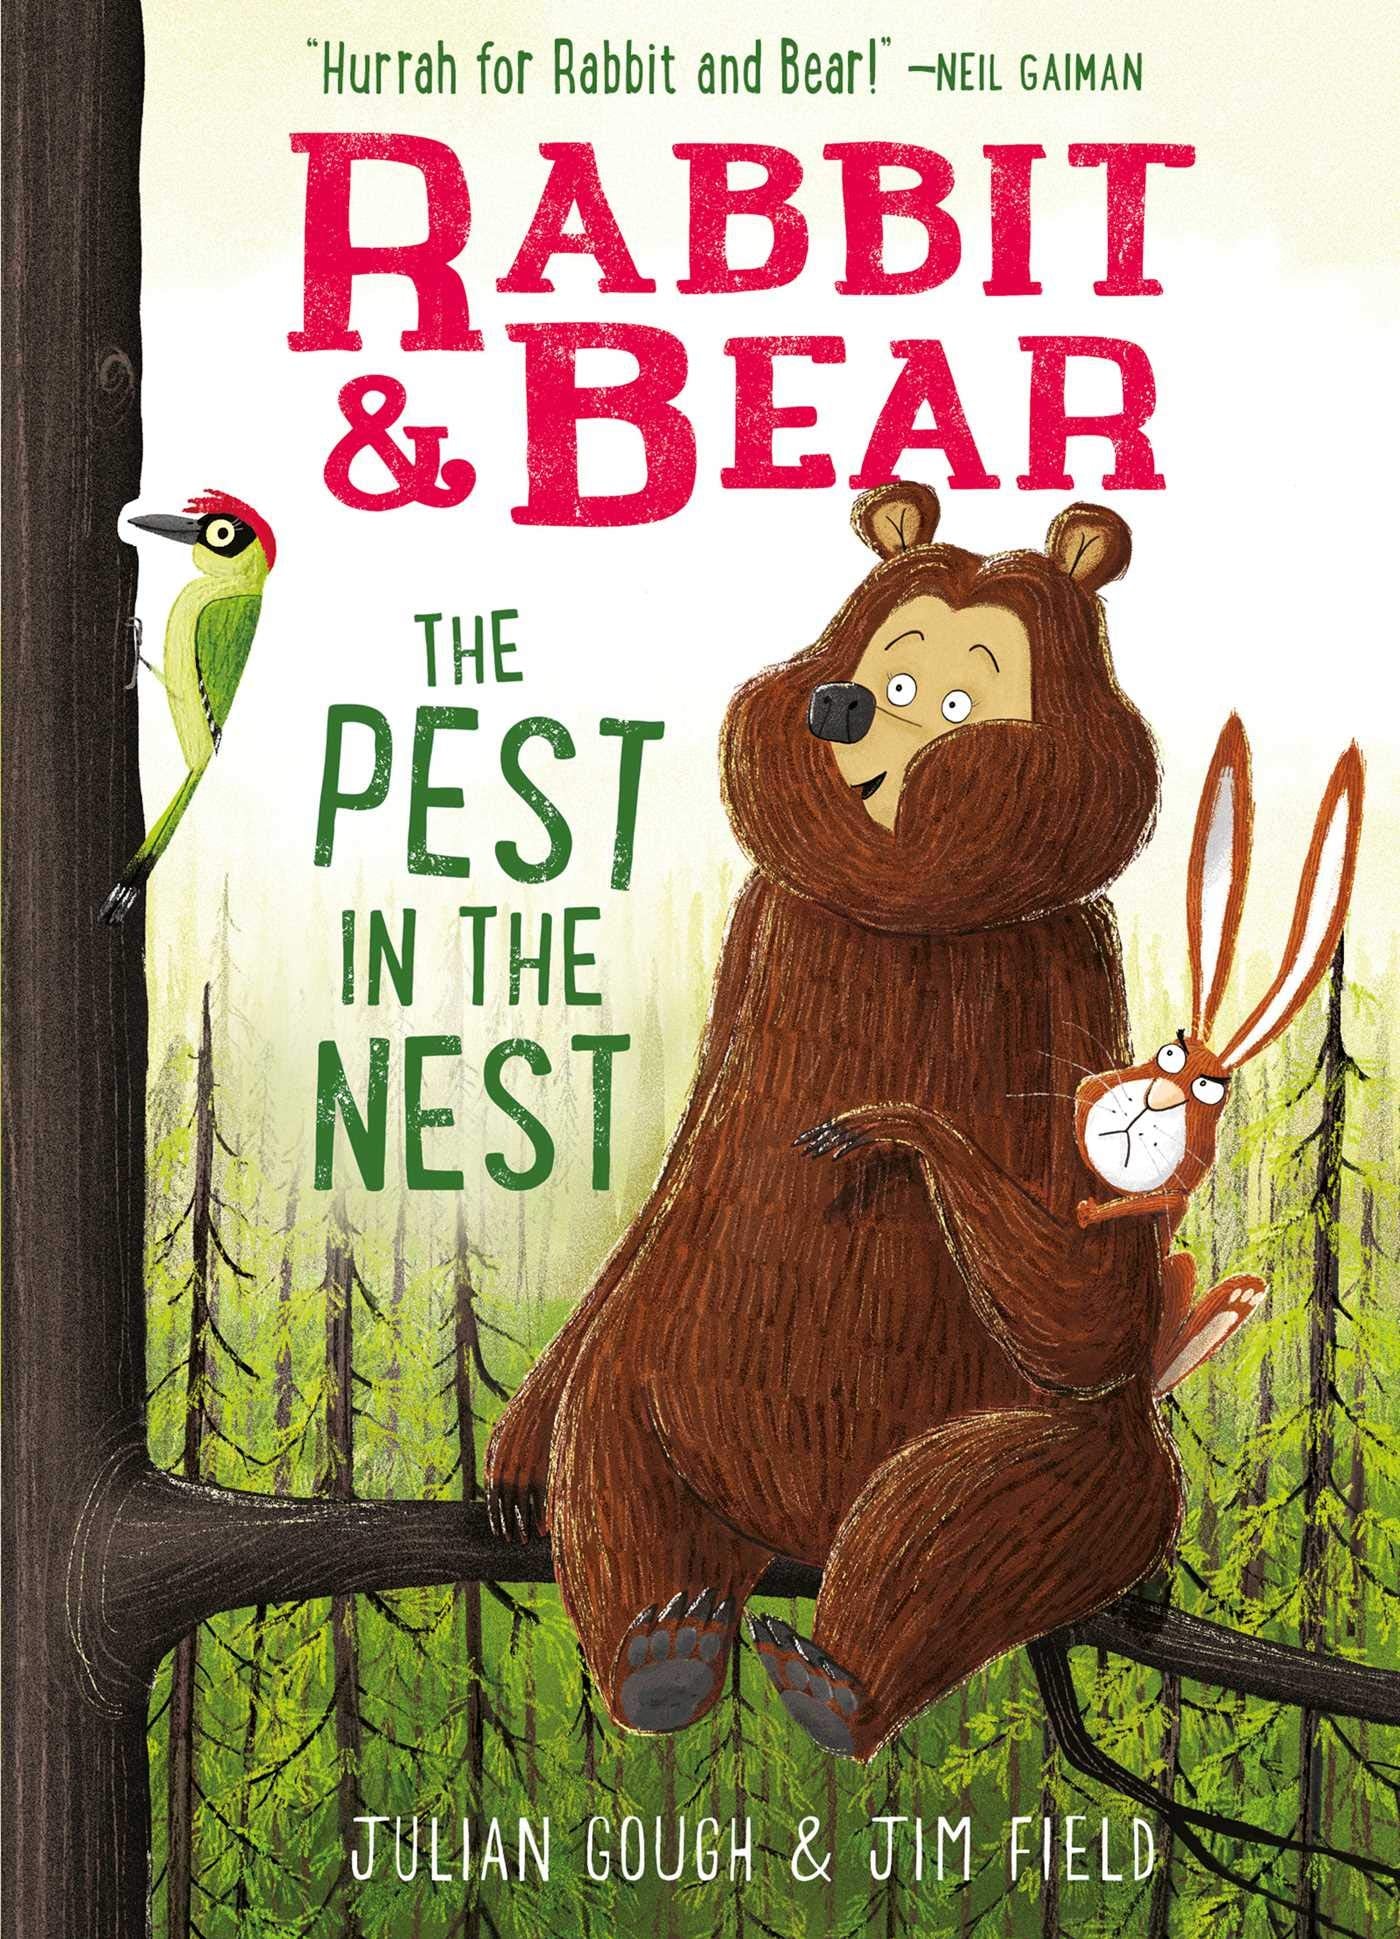 Rabbit & Bear: The Pest in the Nest (Volume 2)